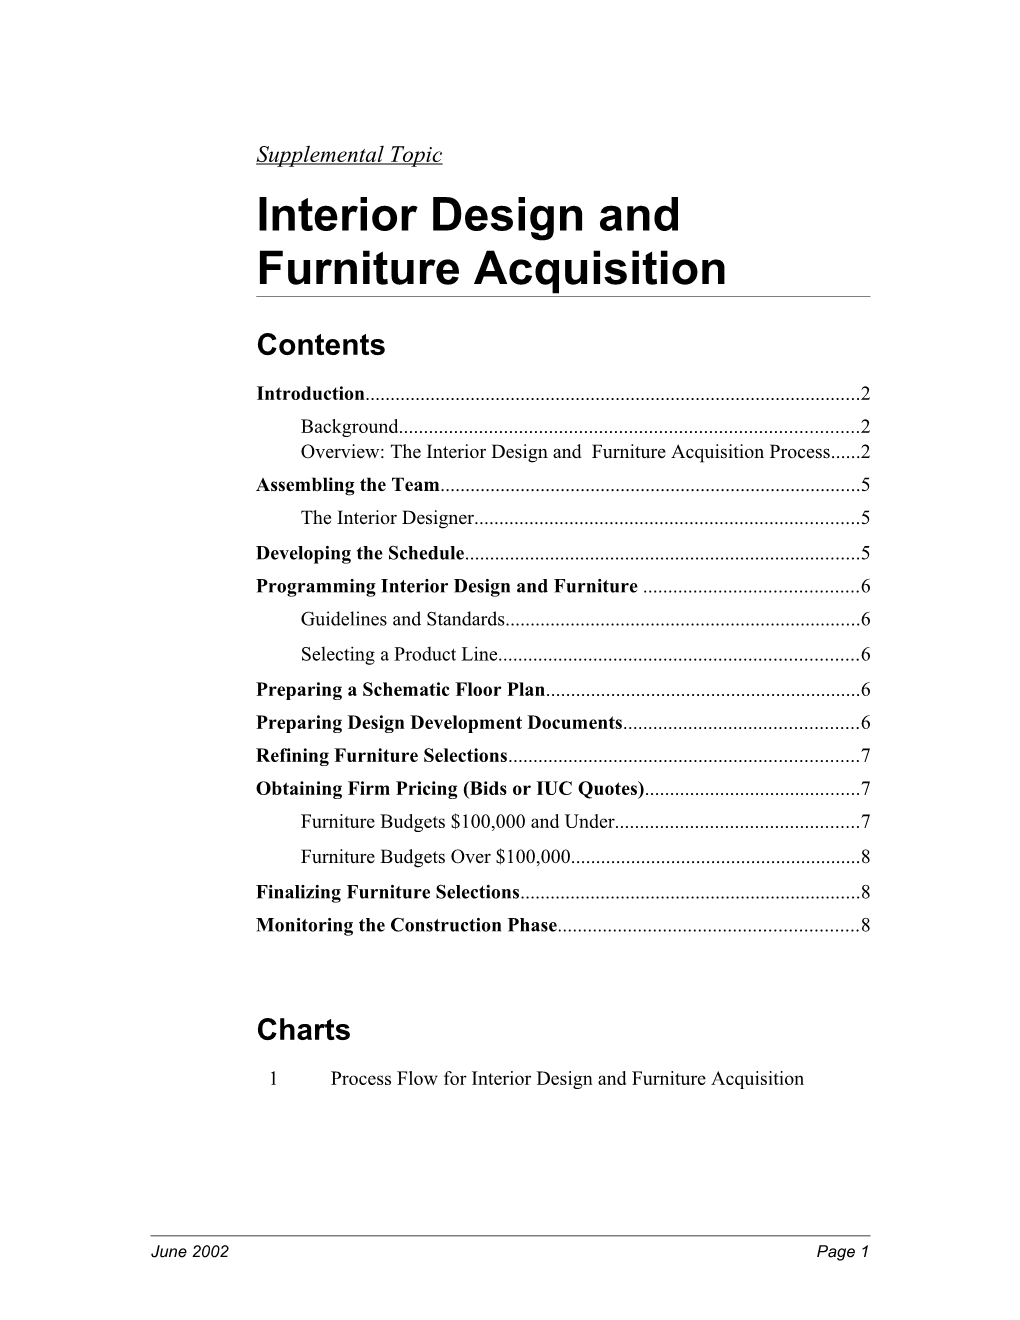 Interior Design and Furniture Acquisition